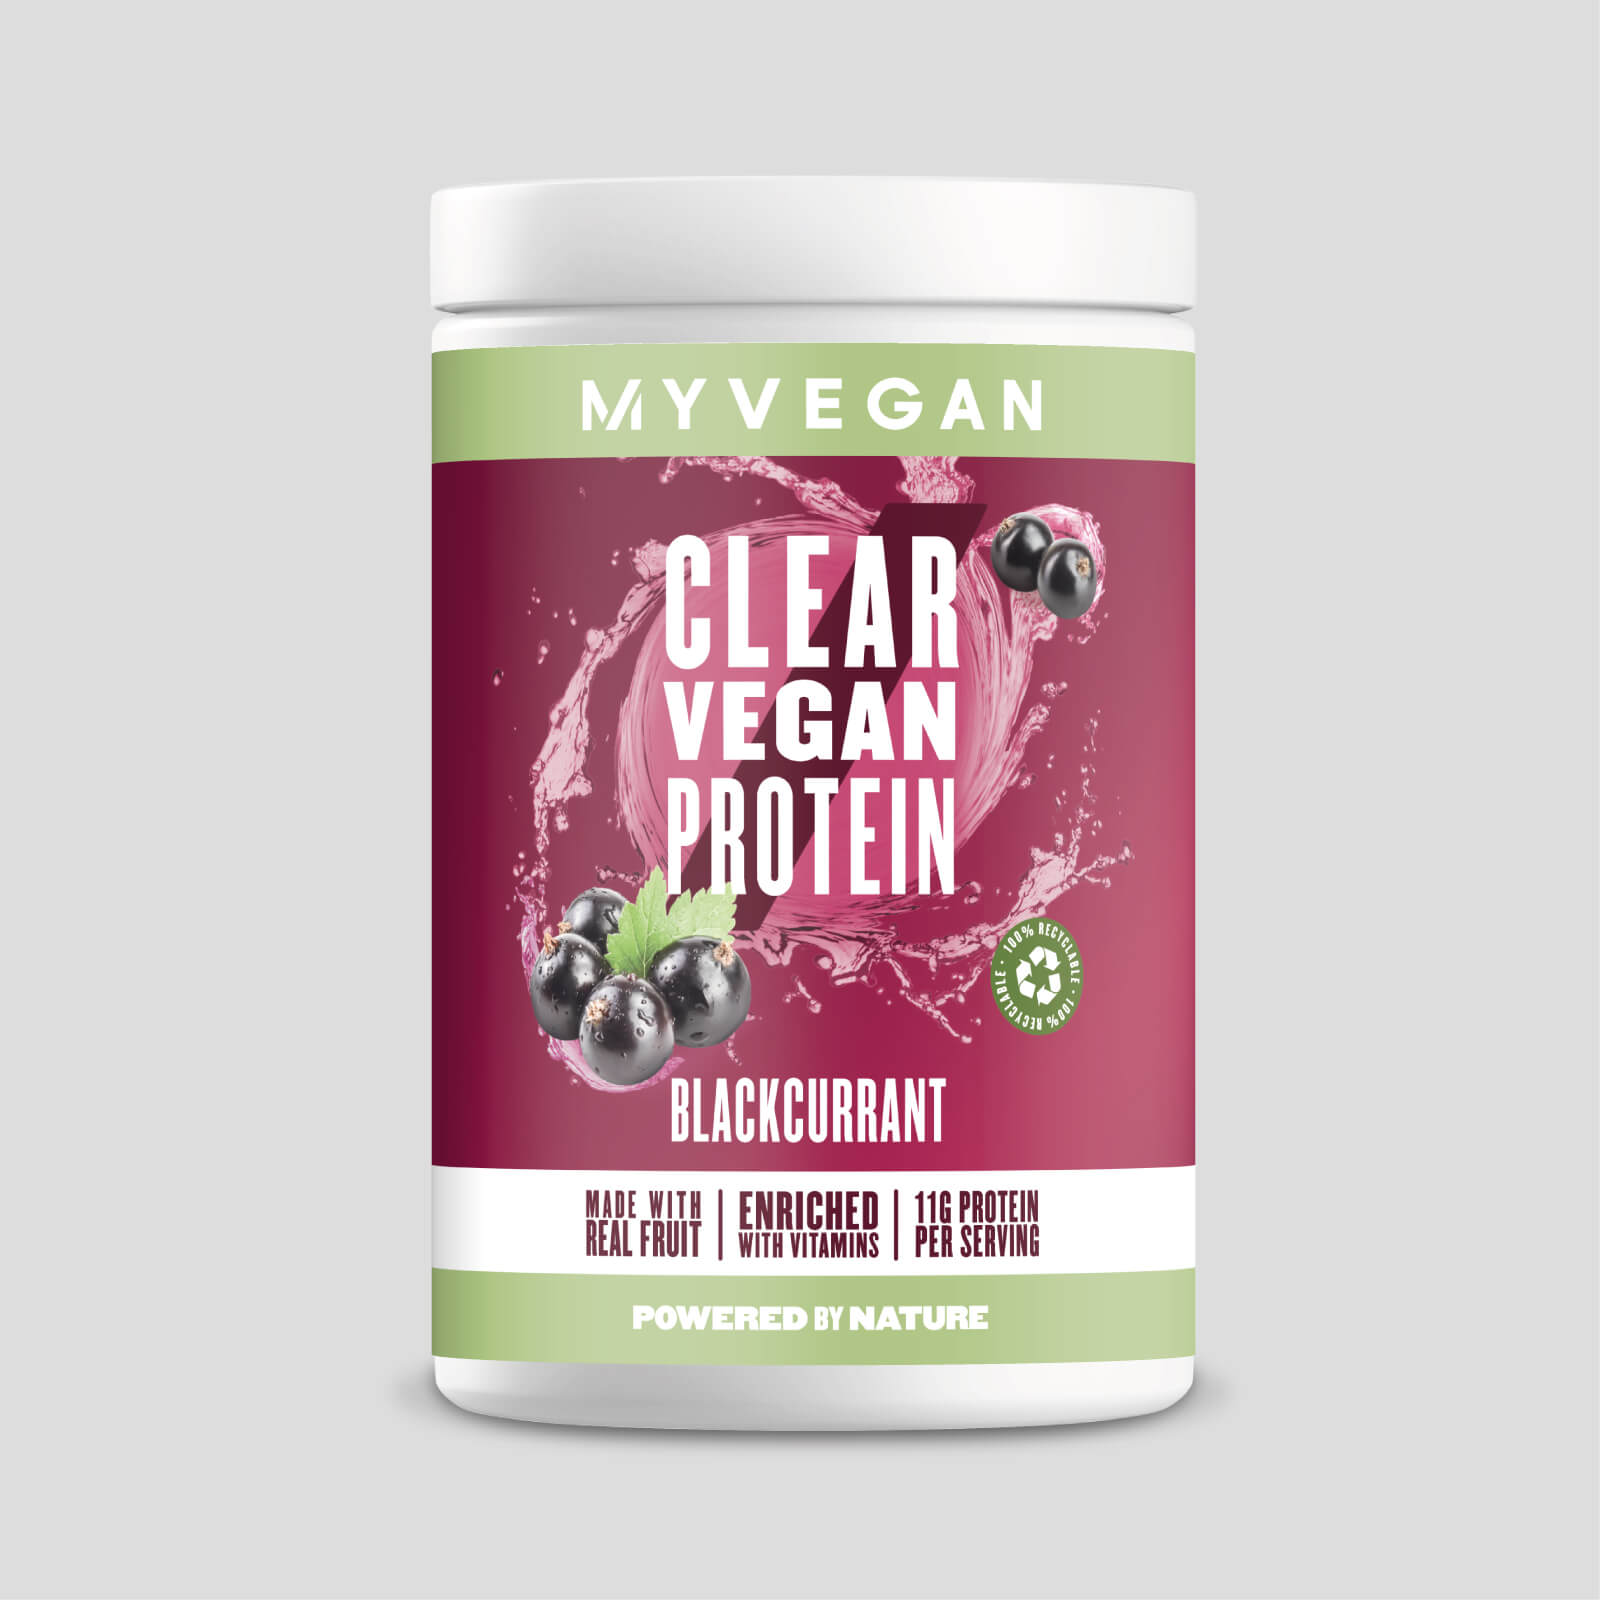 Myvegan Clear Vegan Protein - 20servings - Ribes nero